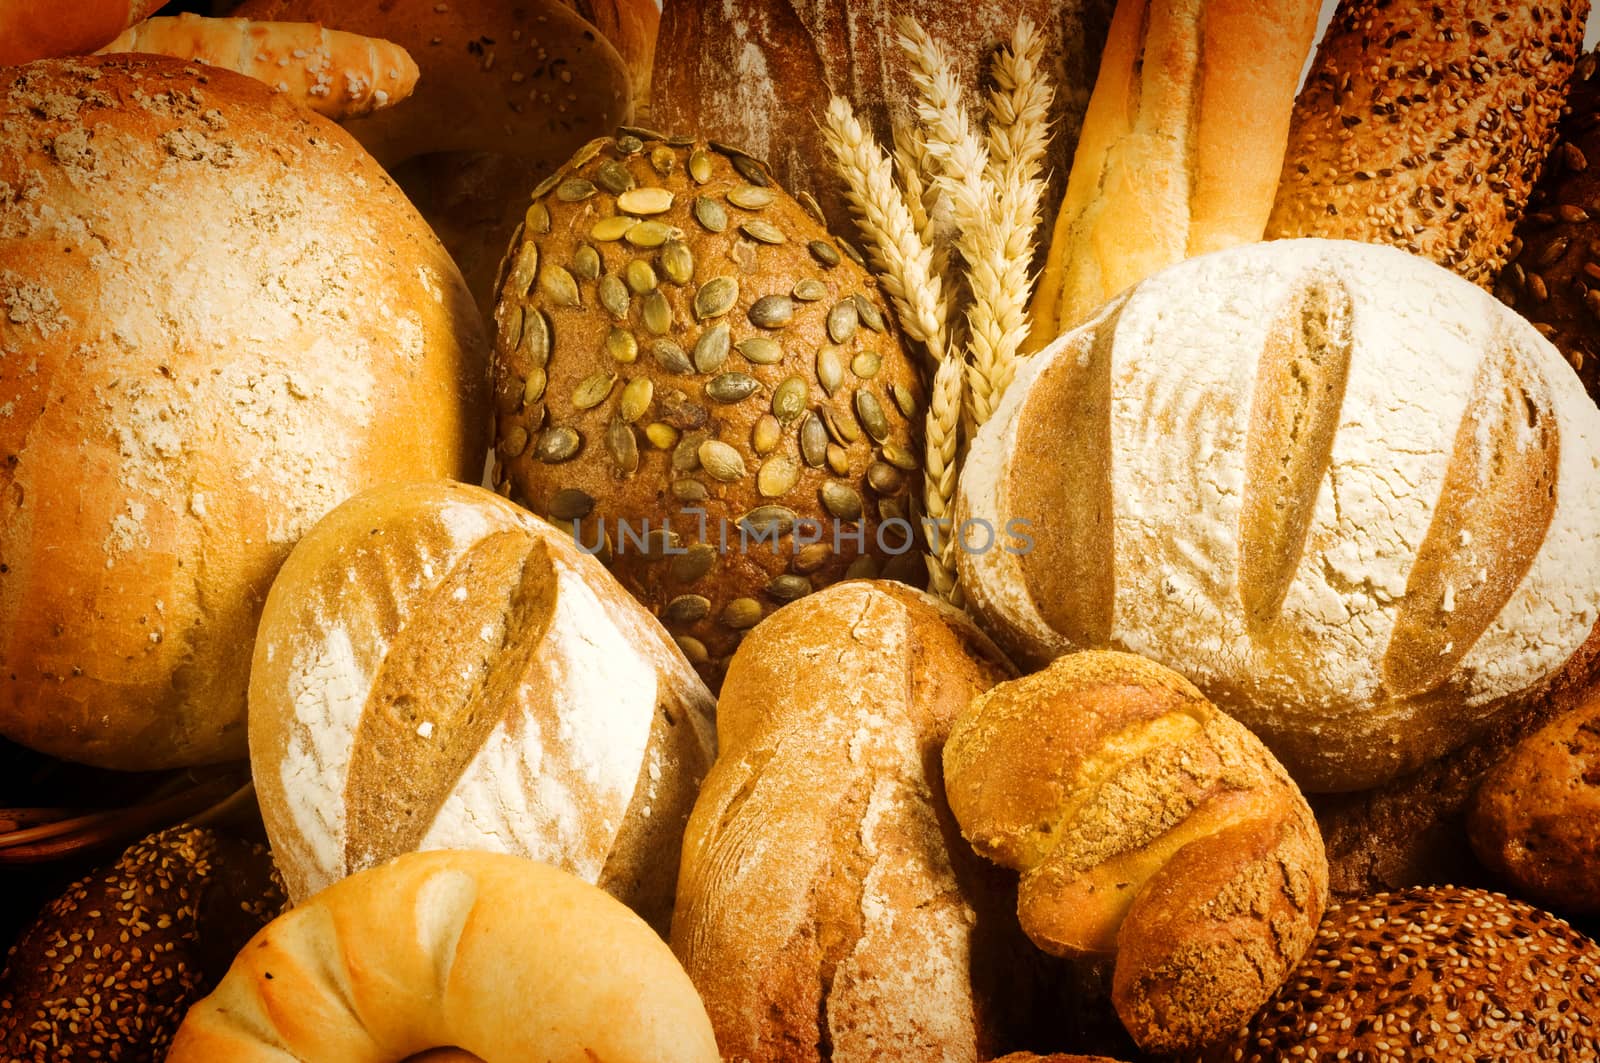 Variety of bread - full frame